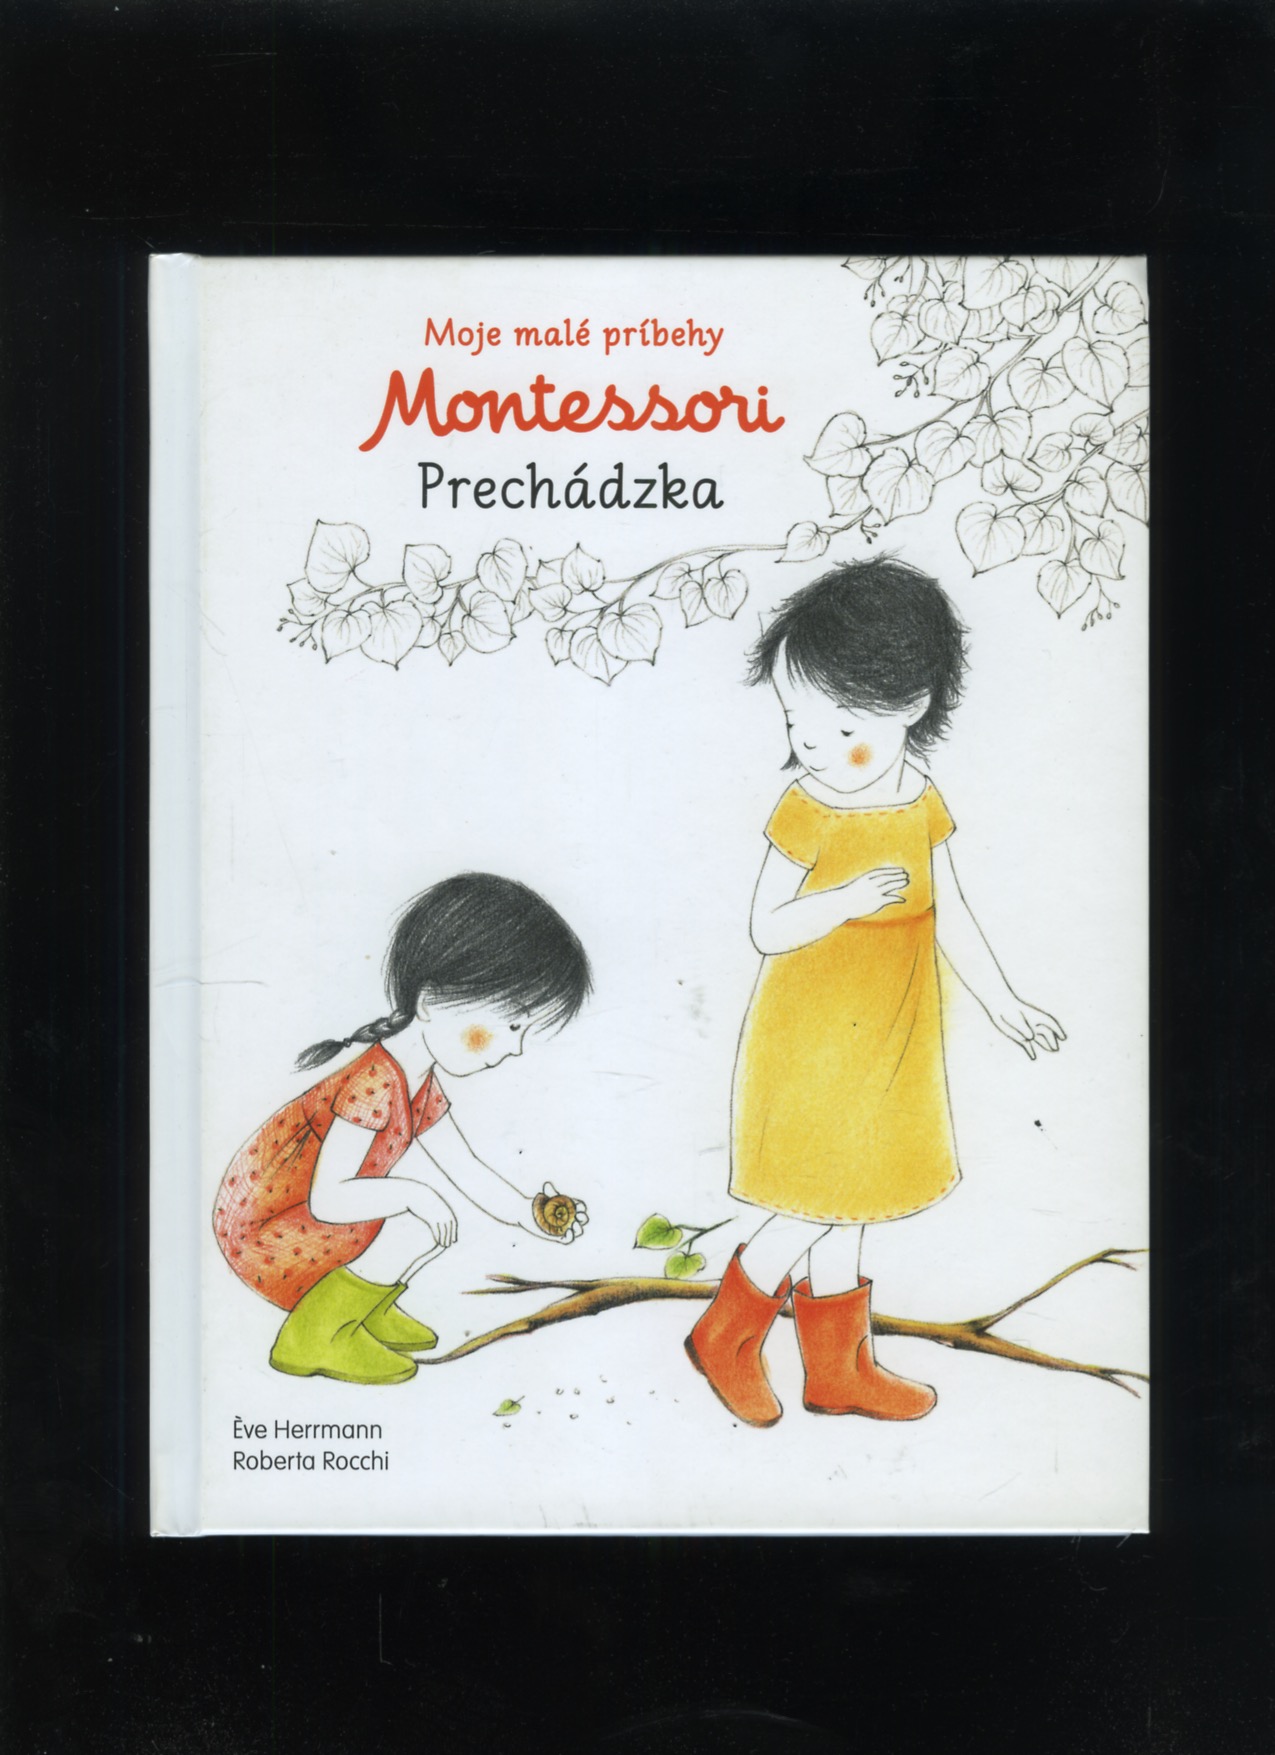 Moje malé príbehy Montessori - Prechádzka